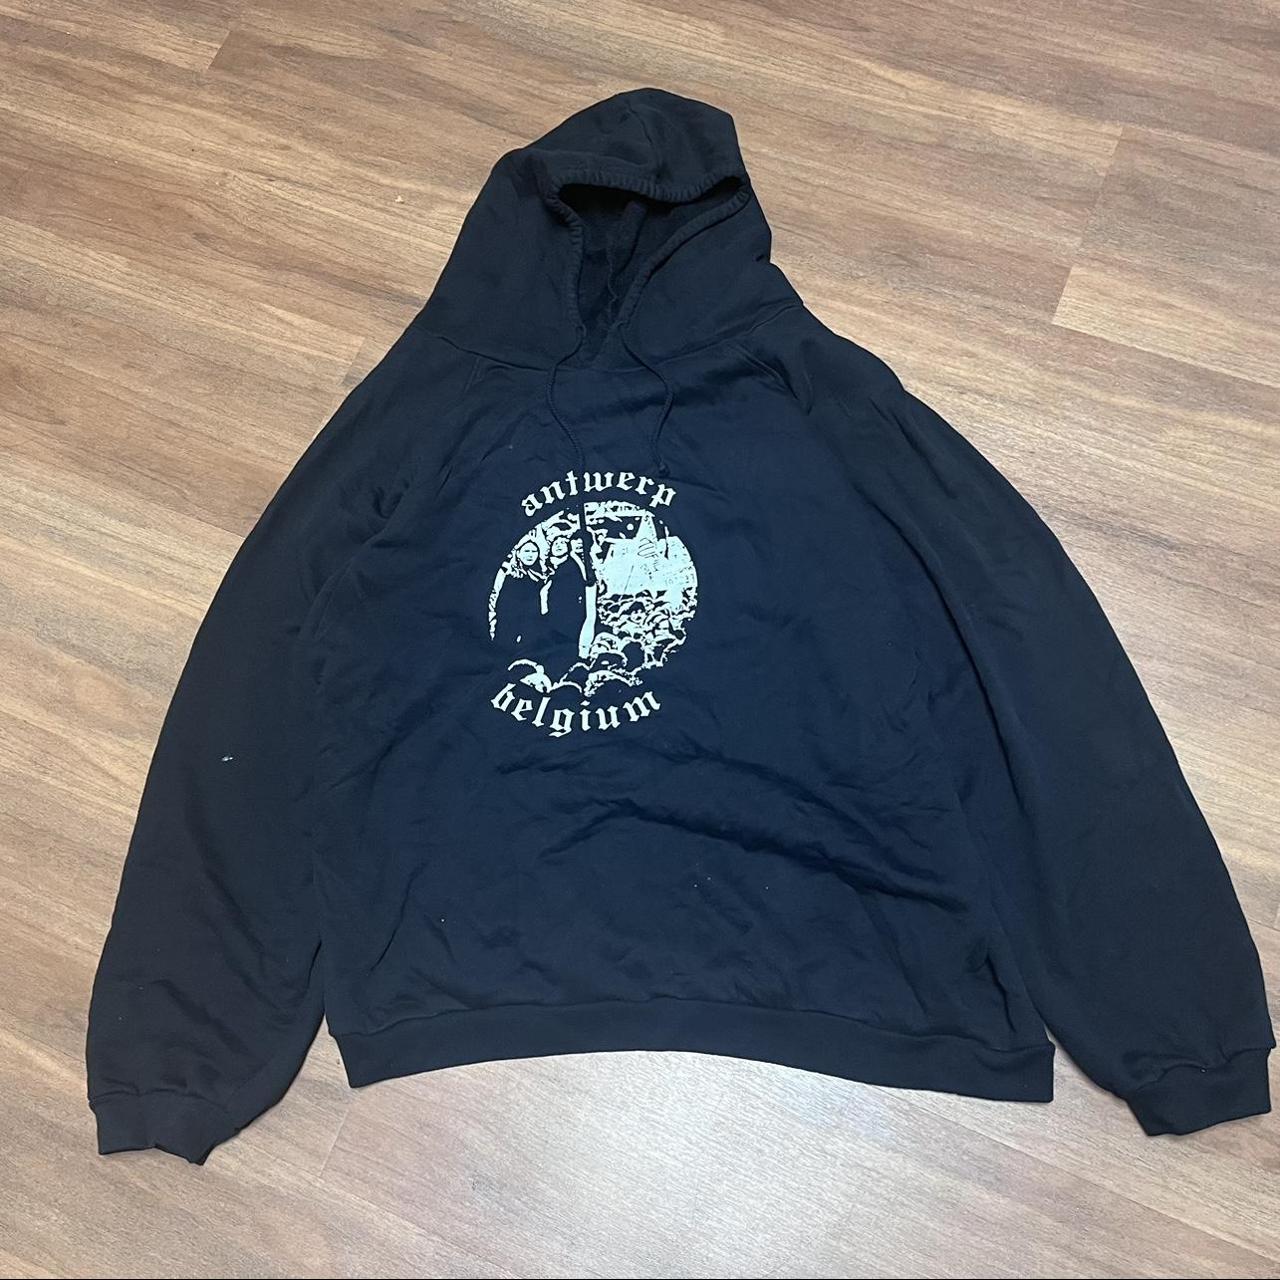 raf simons antwerp hoodie size 1 Fit oversized (very... - Depop